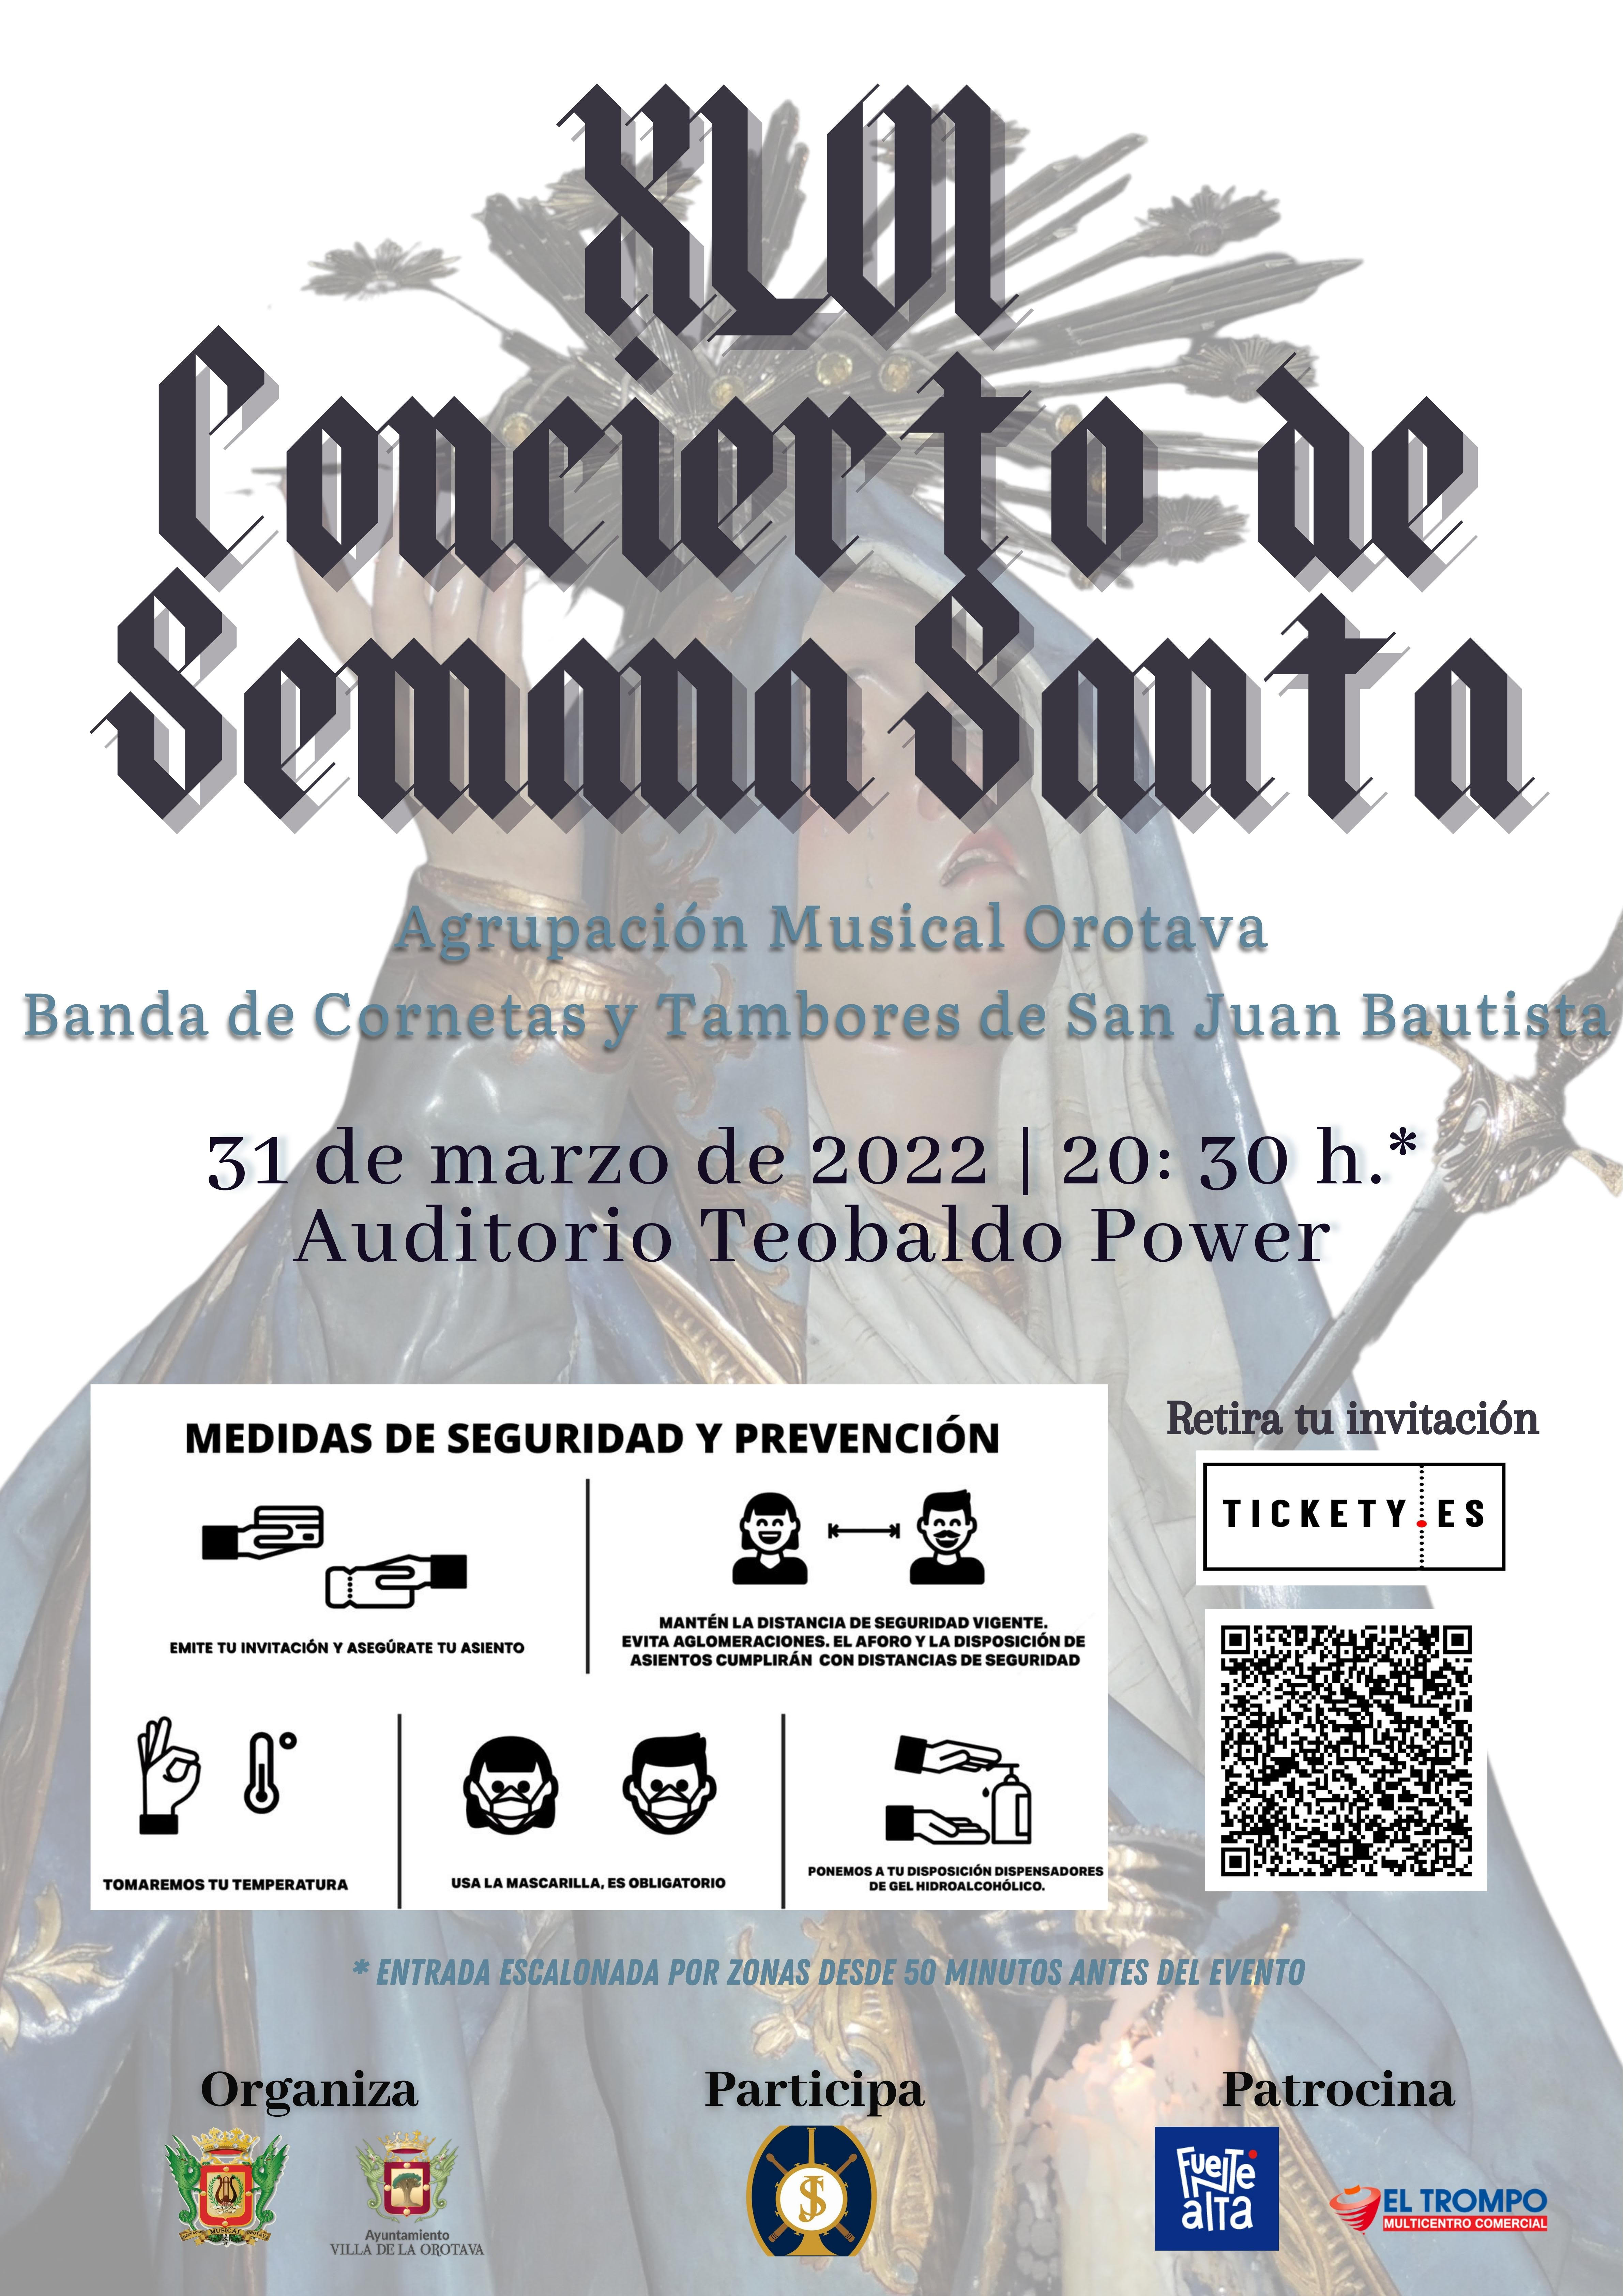 El Auditorio Teobaldo Power acoge el XLVI Concierto de Semana Santa